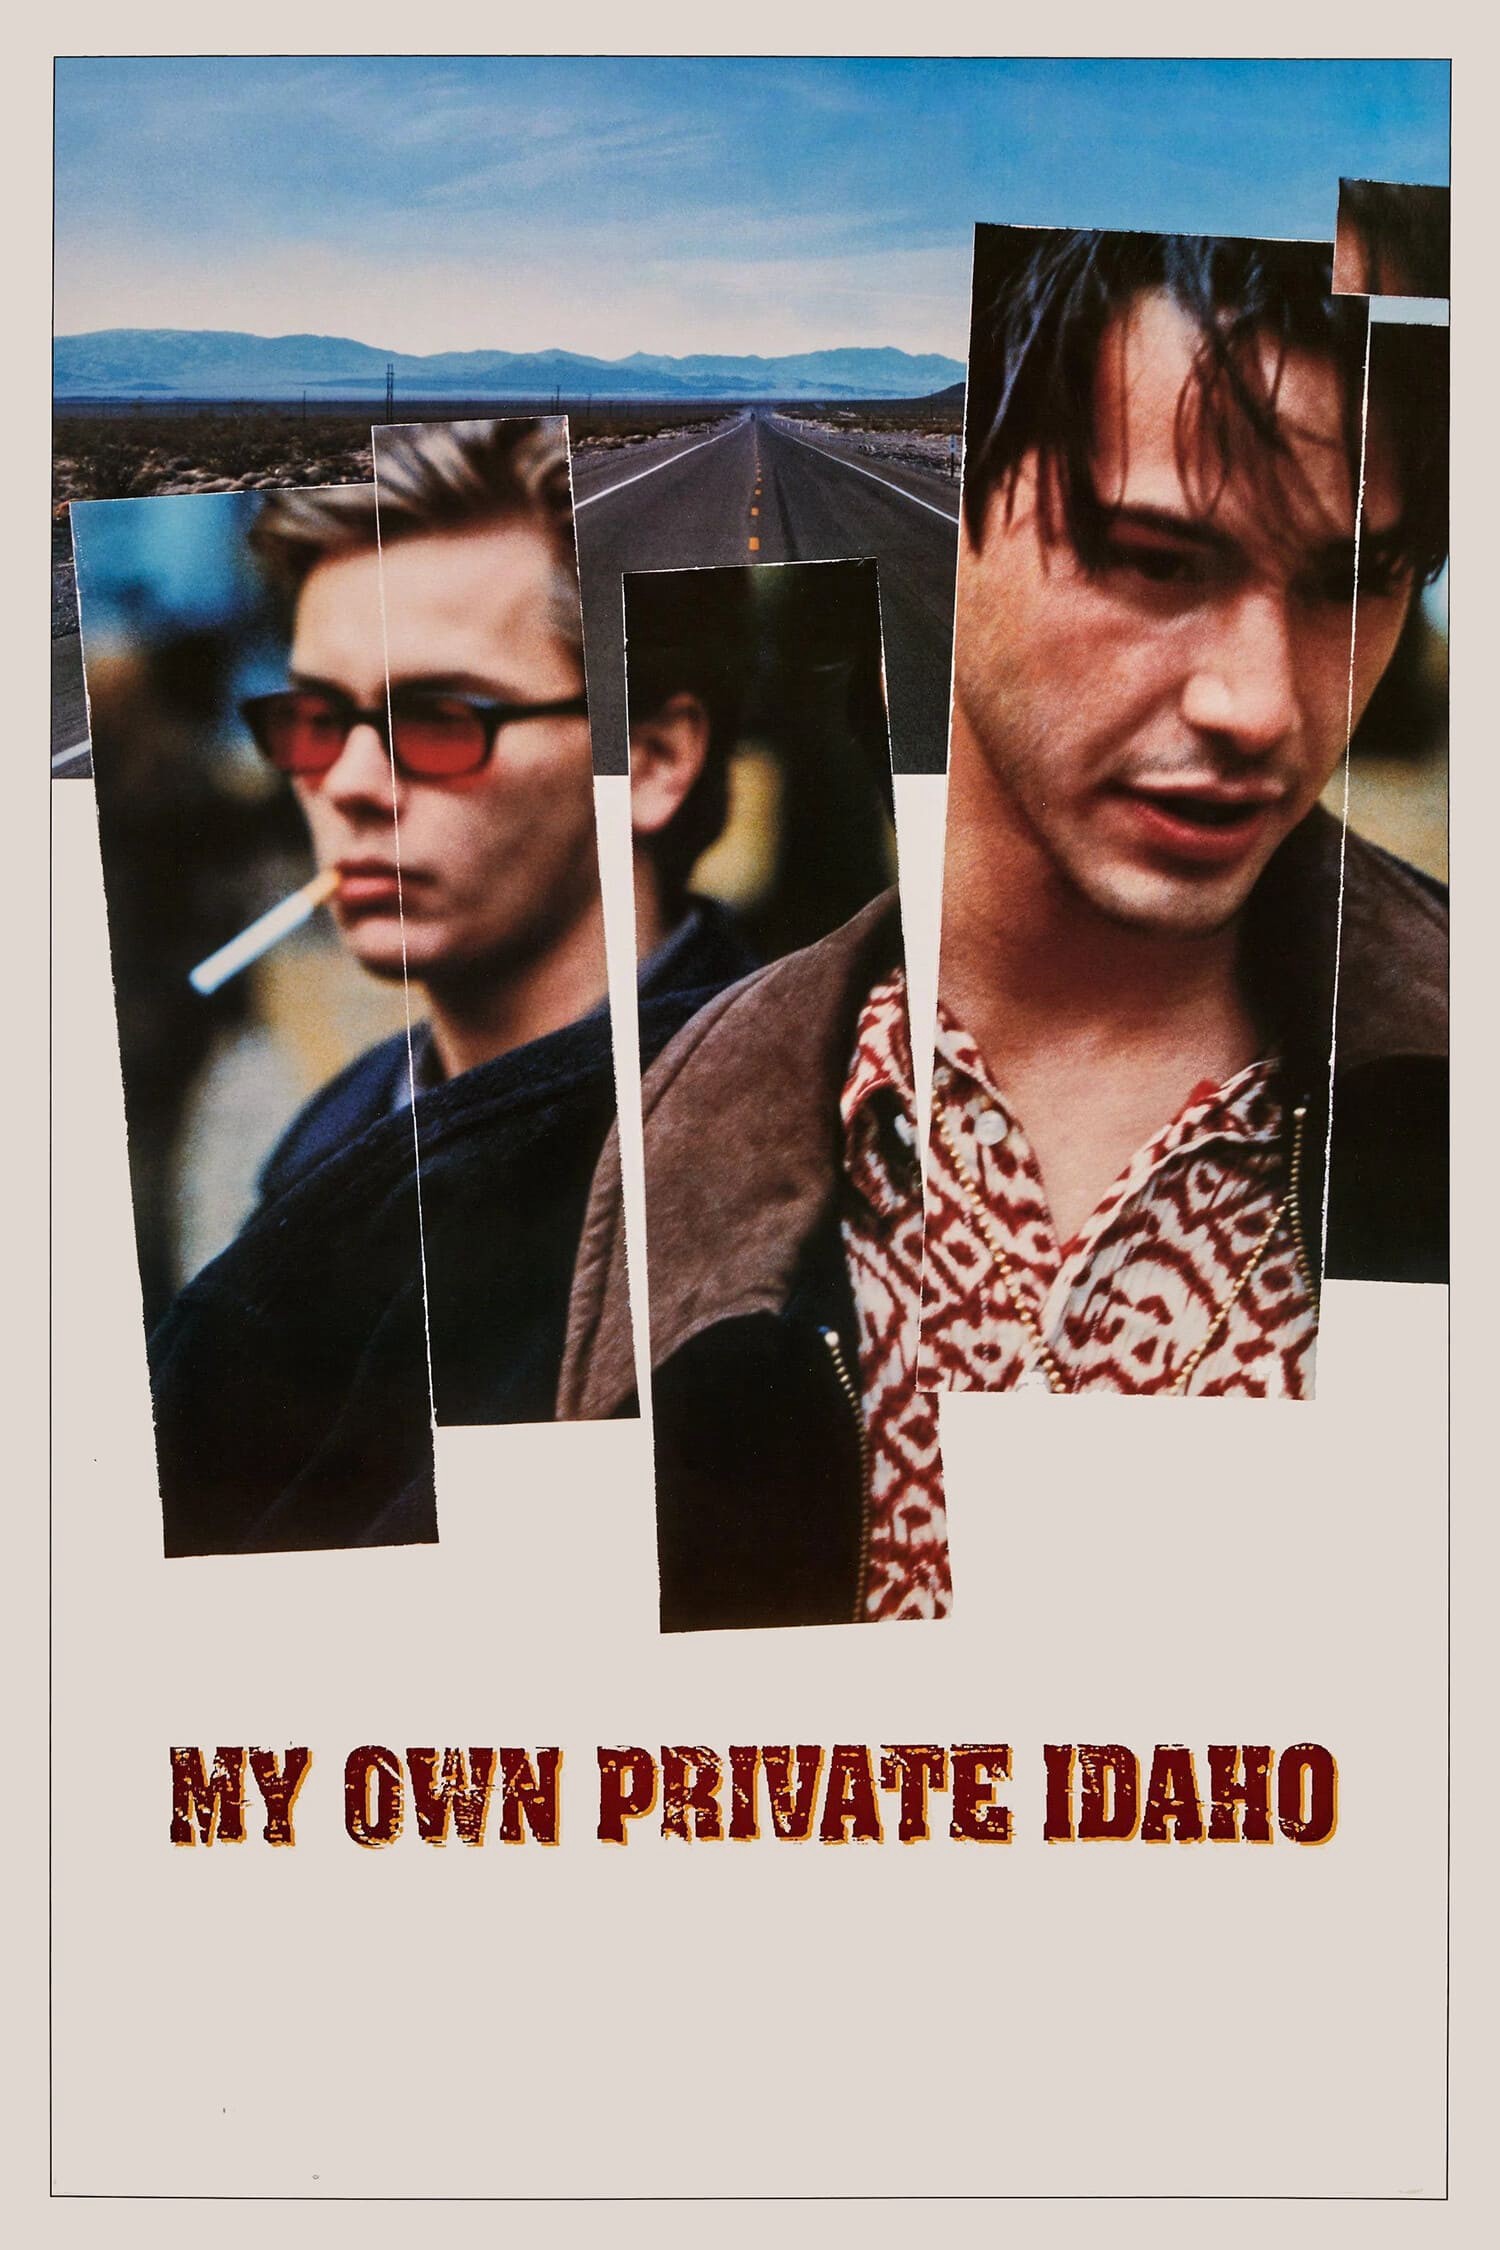 My Own Private Idaho - My Own Private Idaho